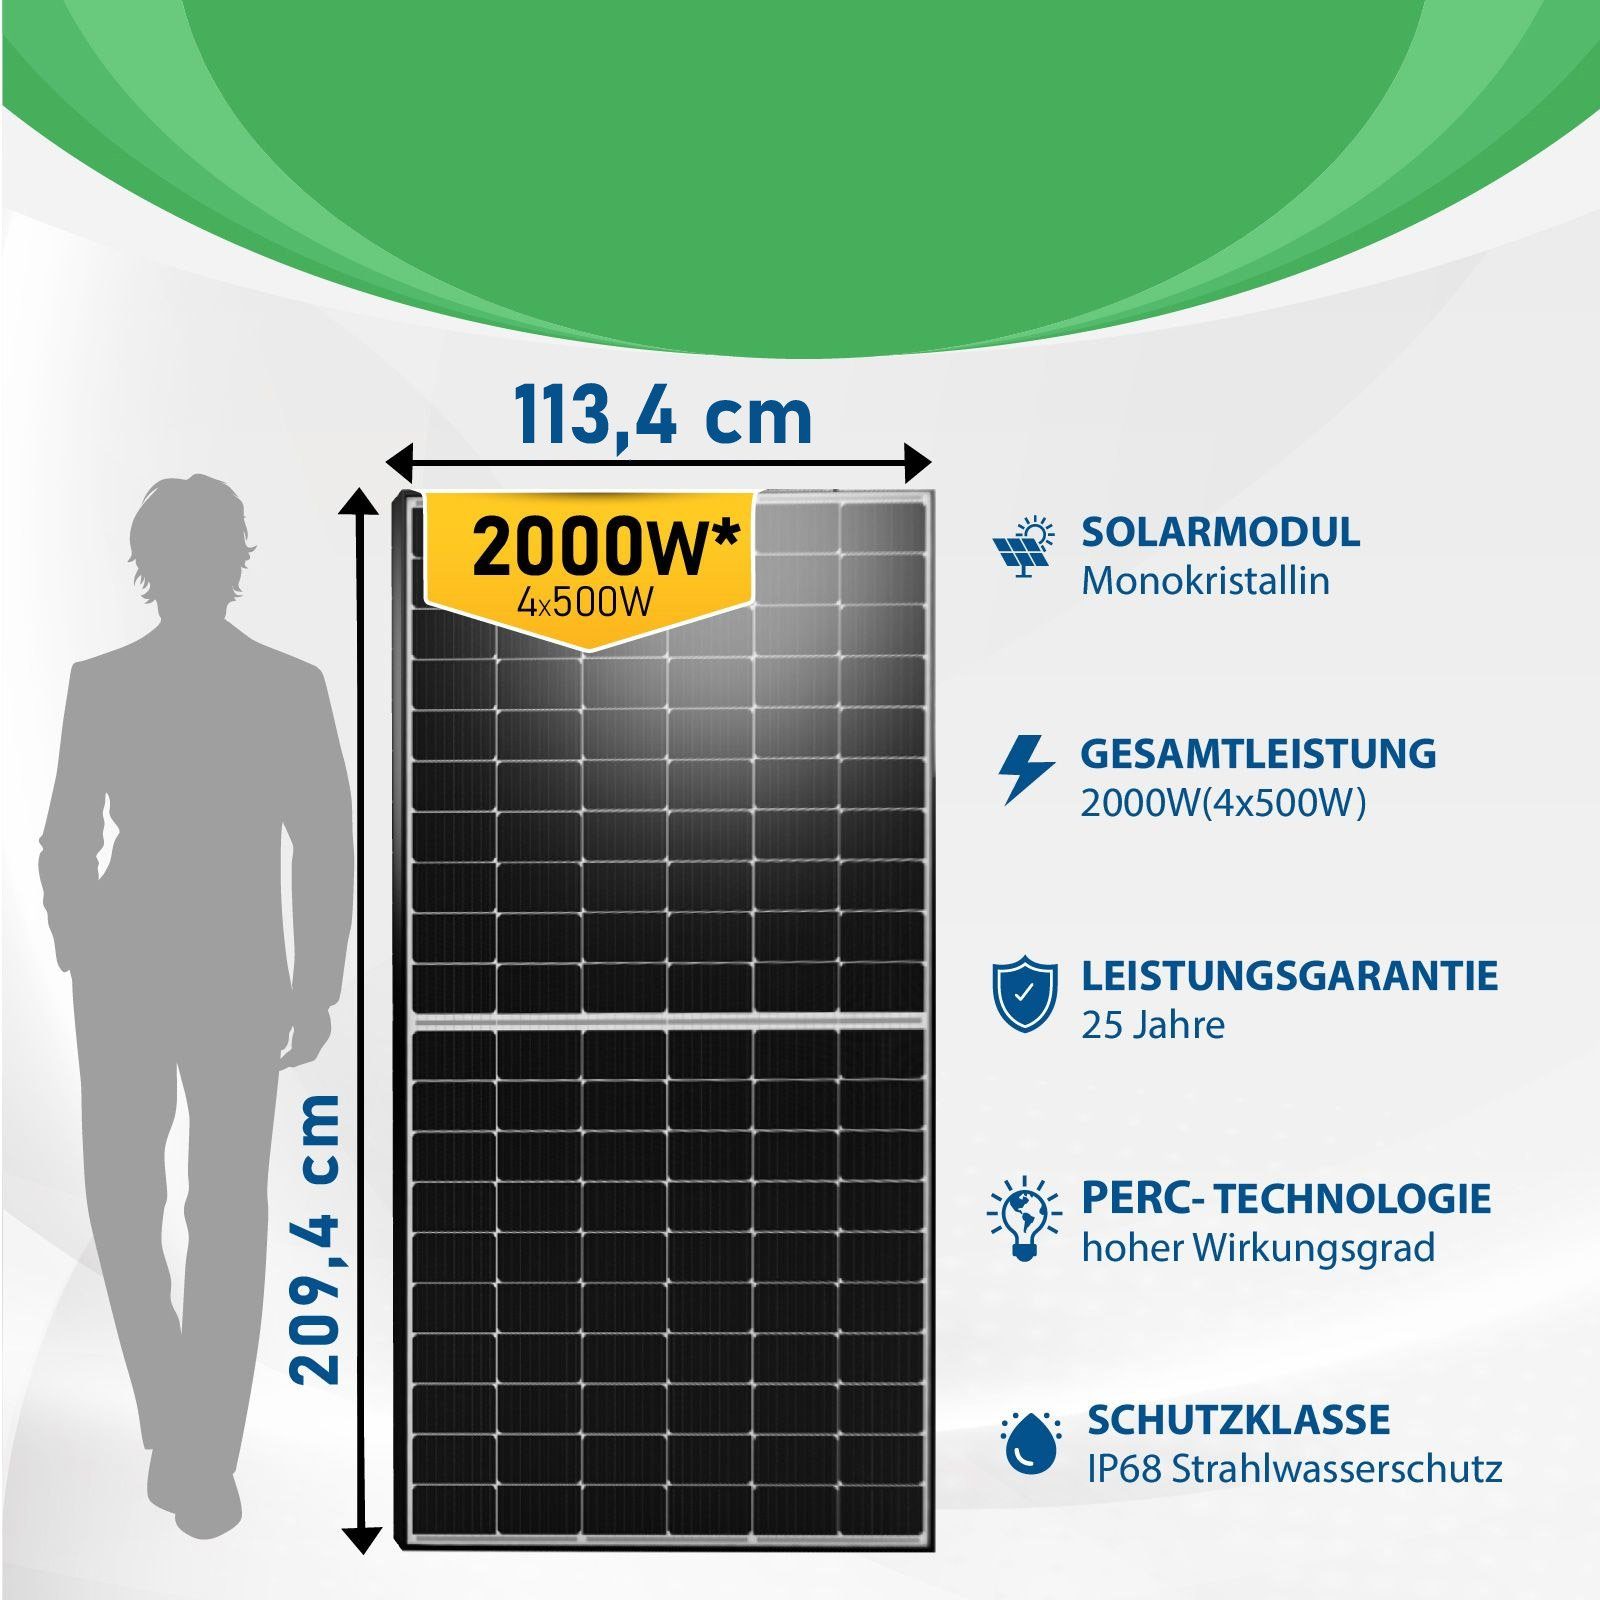 Campergold Solaranlage 2000W (4x Mit Ziegeldach, Balkonkraftwerk, 500W) Wechselrichter, HMS-1600-4T Montage Photovoltaik Hoymiles DTU-WLite-S